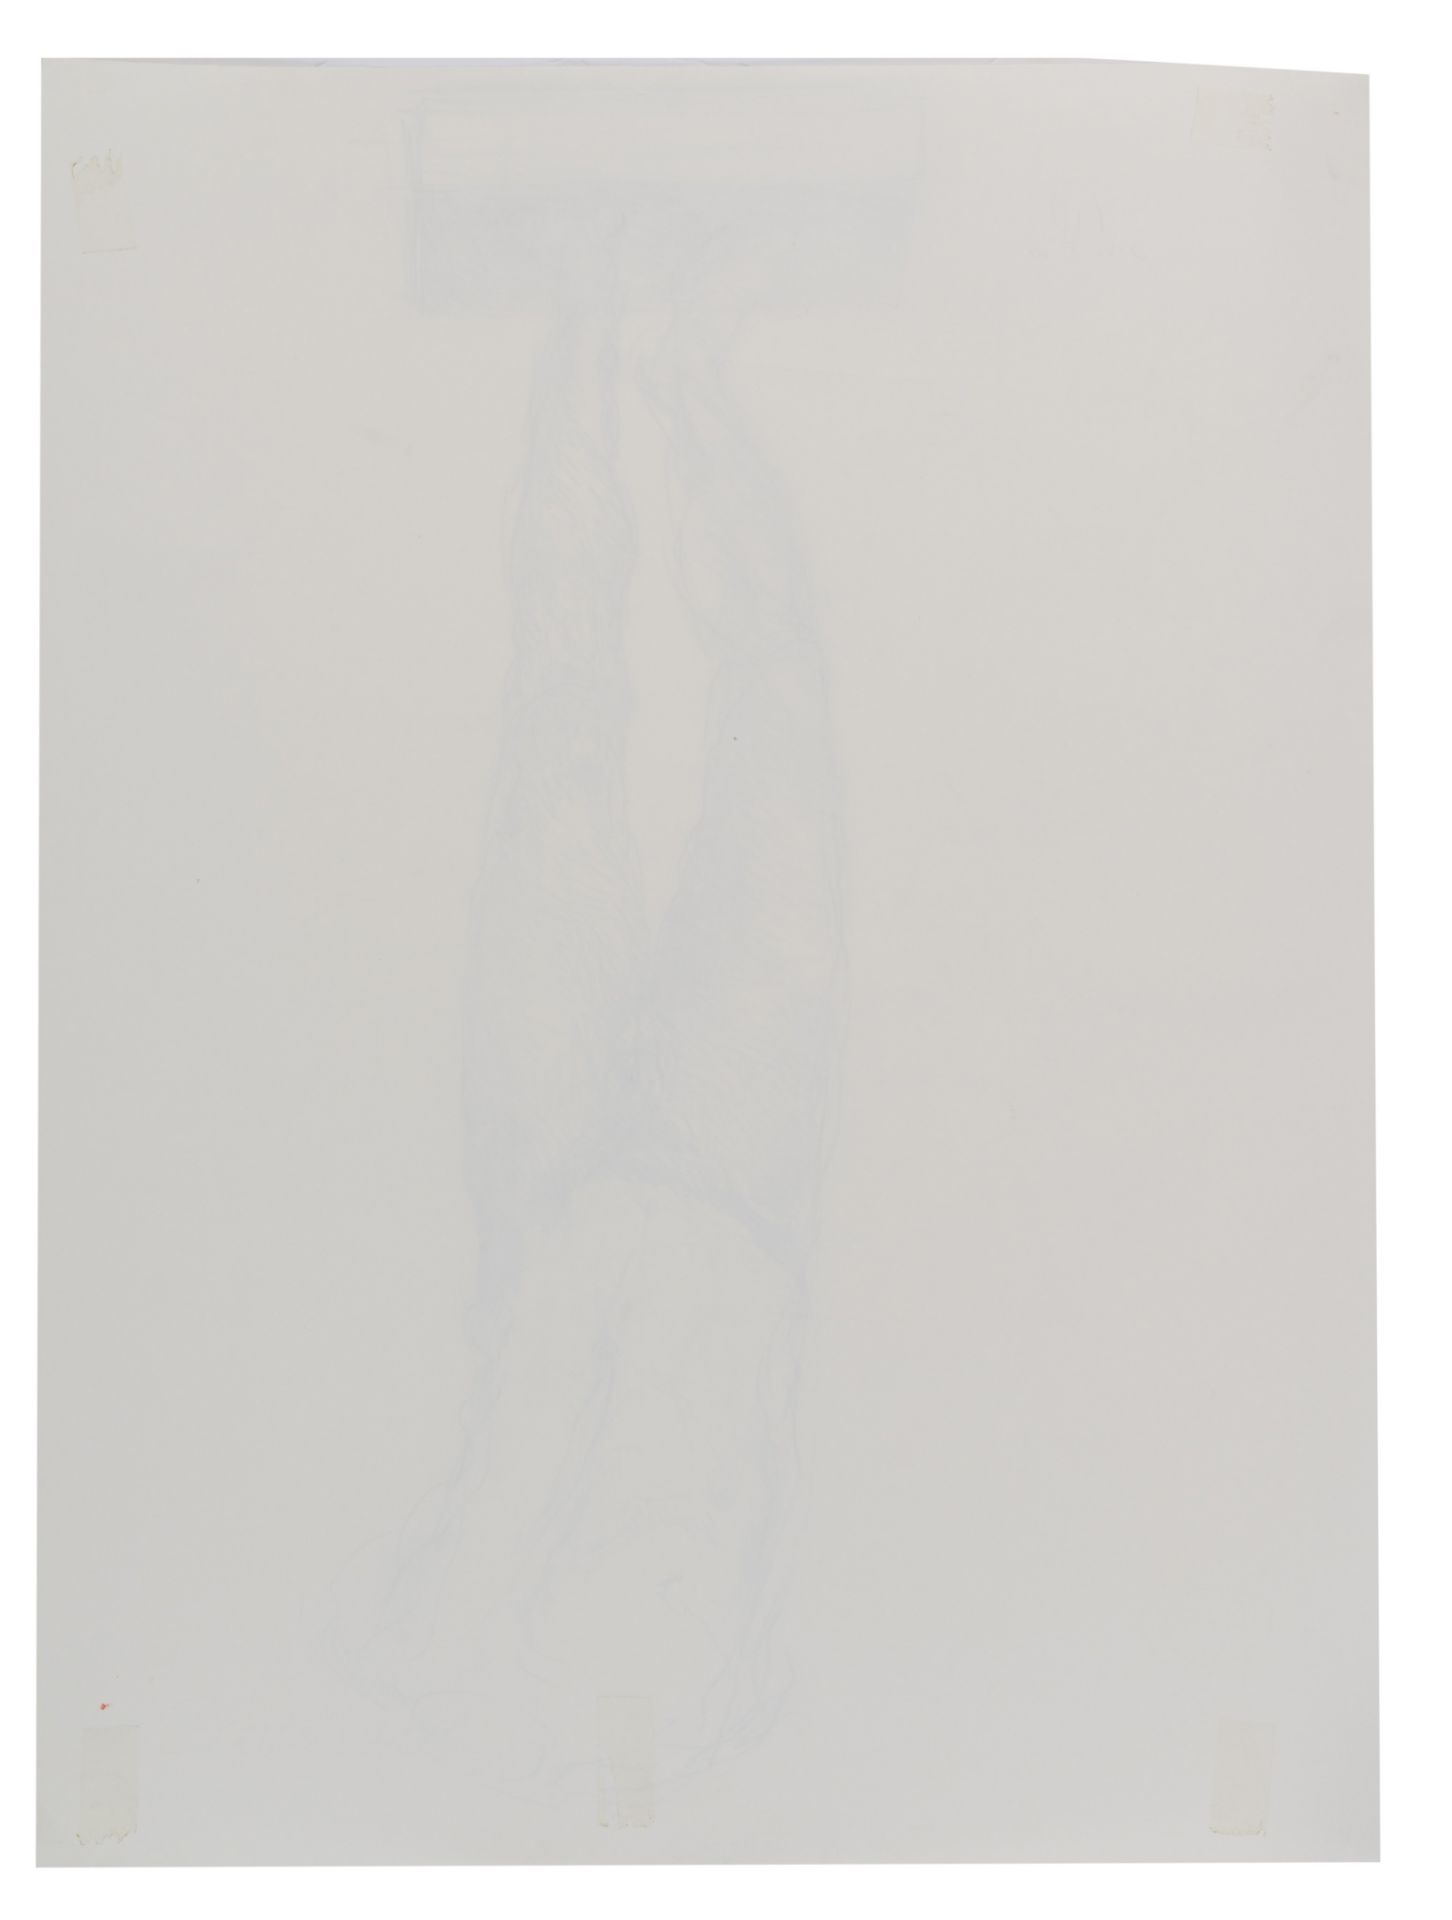 Philippe Van Isacker (1949), 'Torso', 48 x 63,5 cm